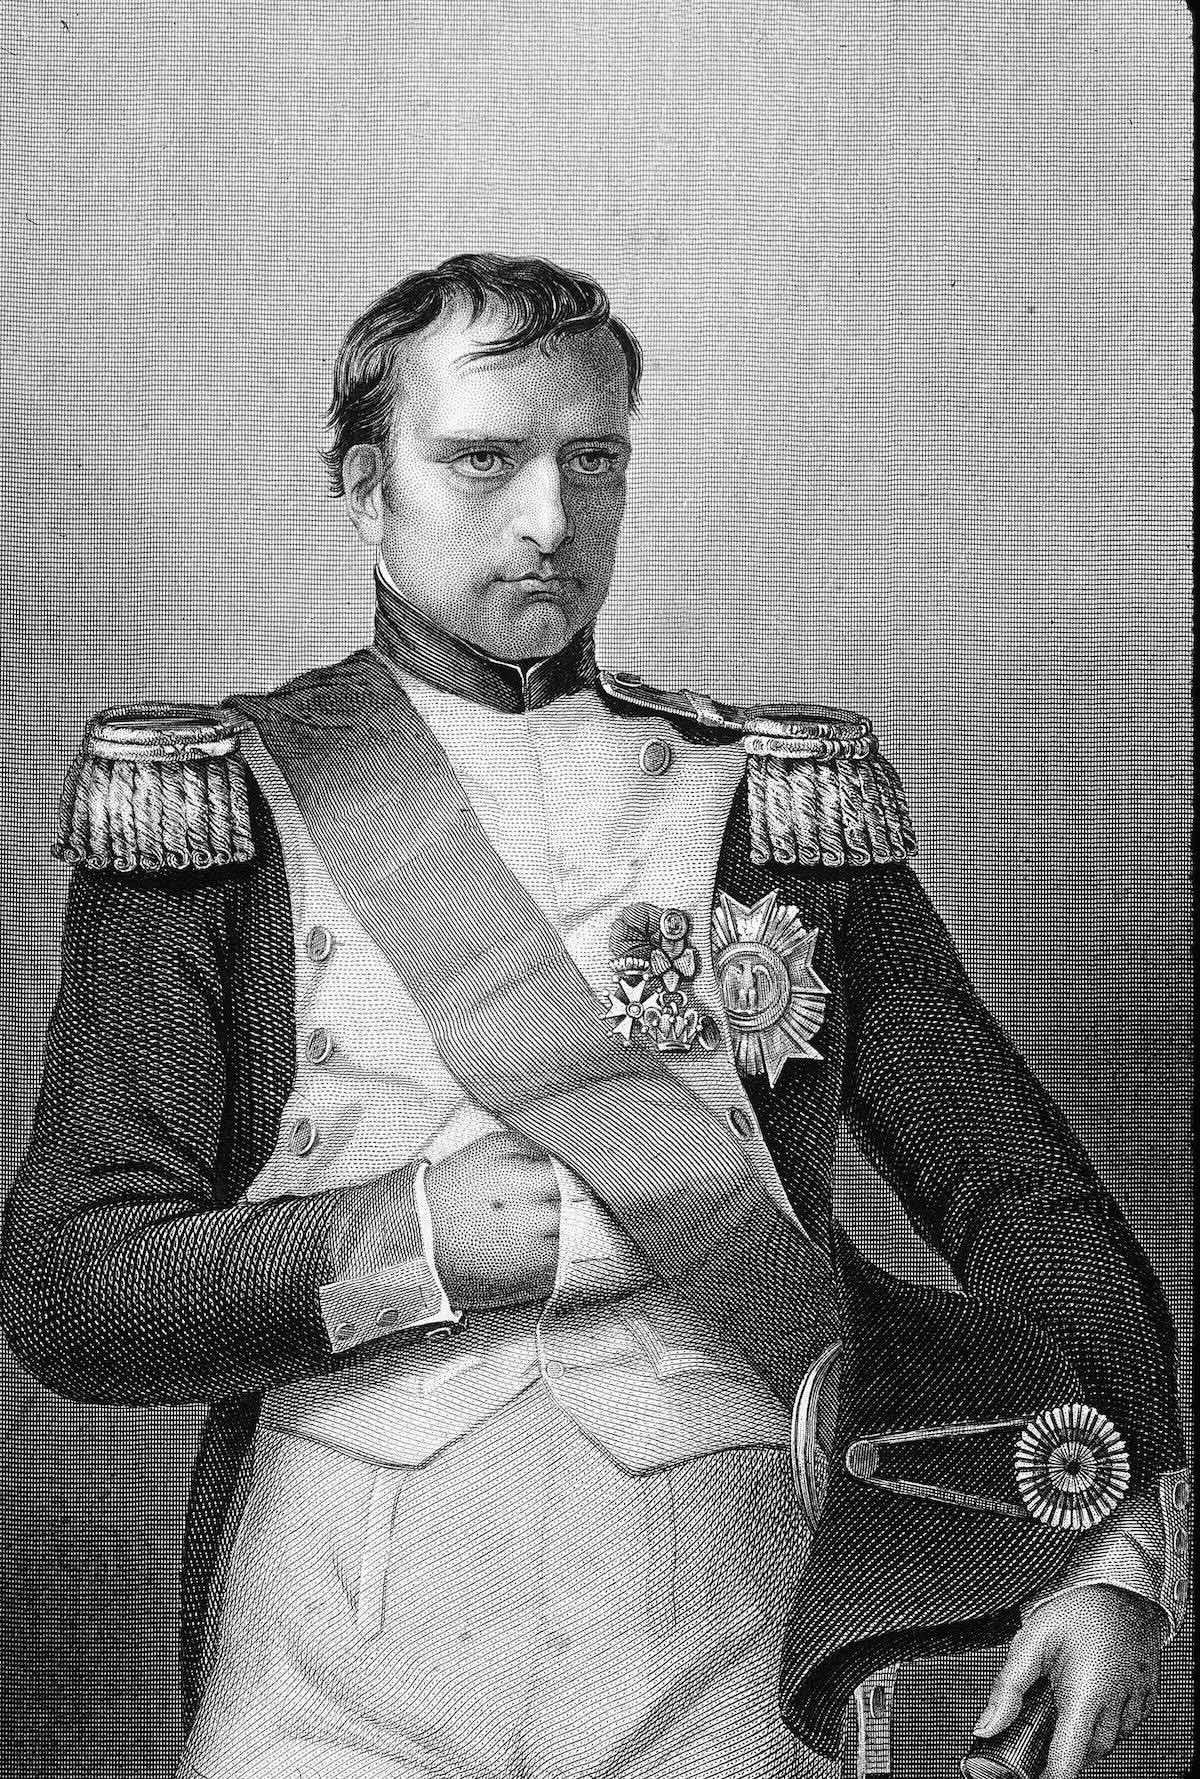 A black and white portrait of Napoleon Bonaparte hiding his hand